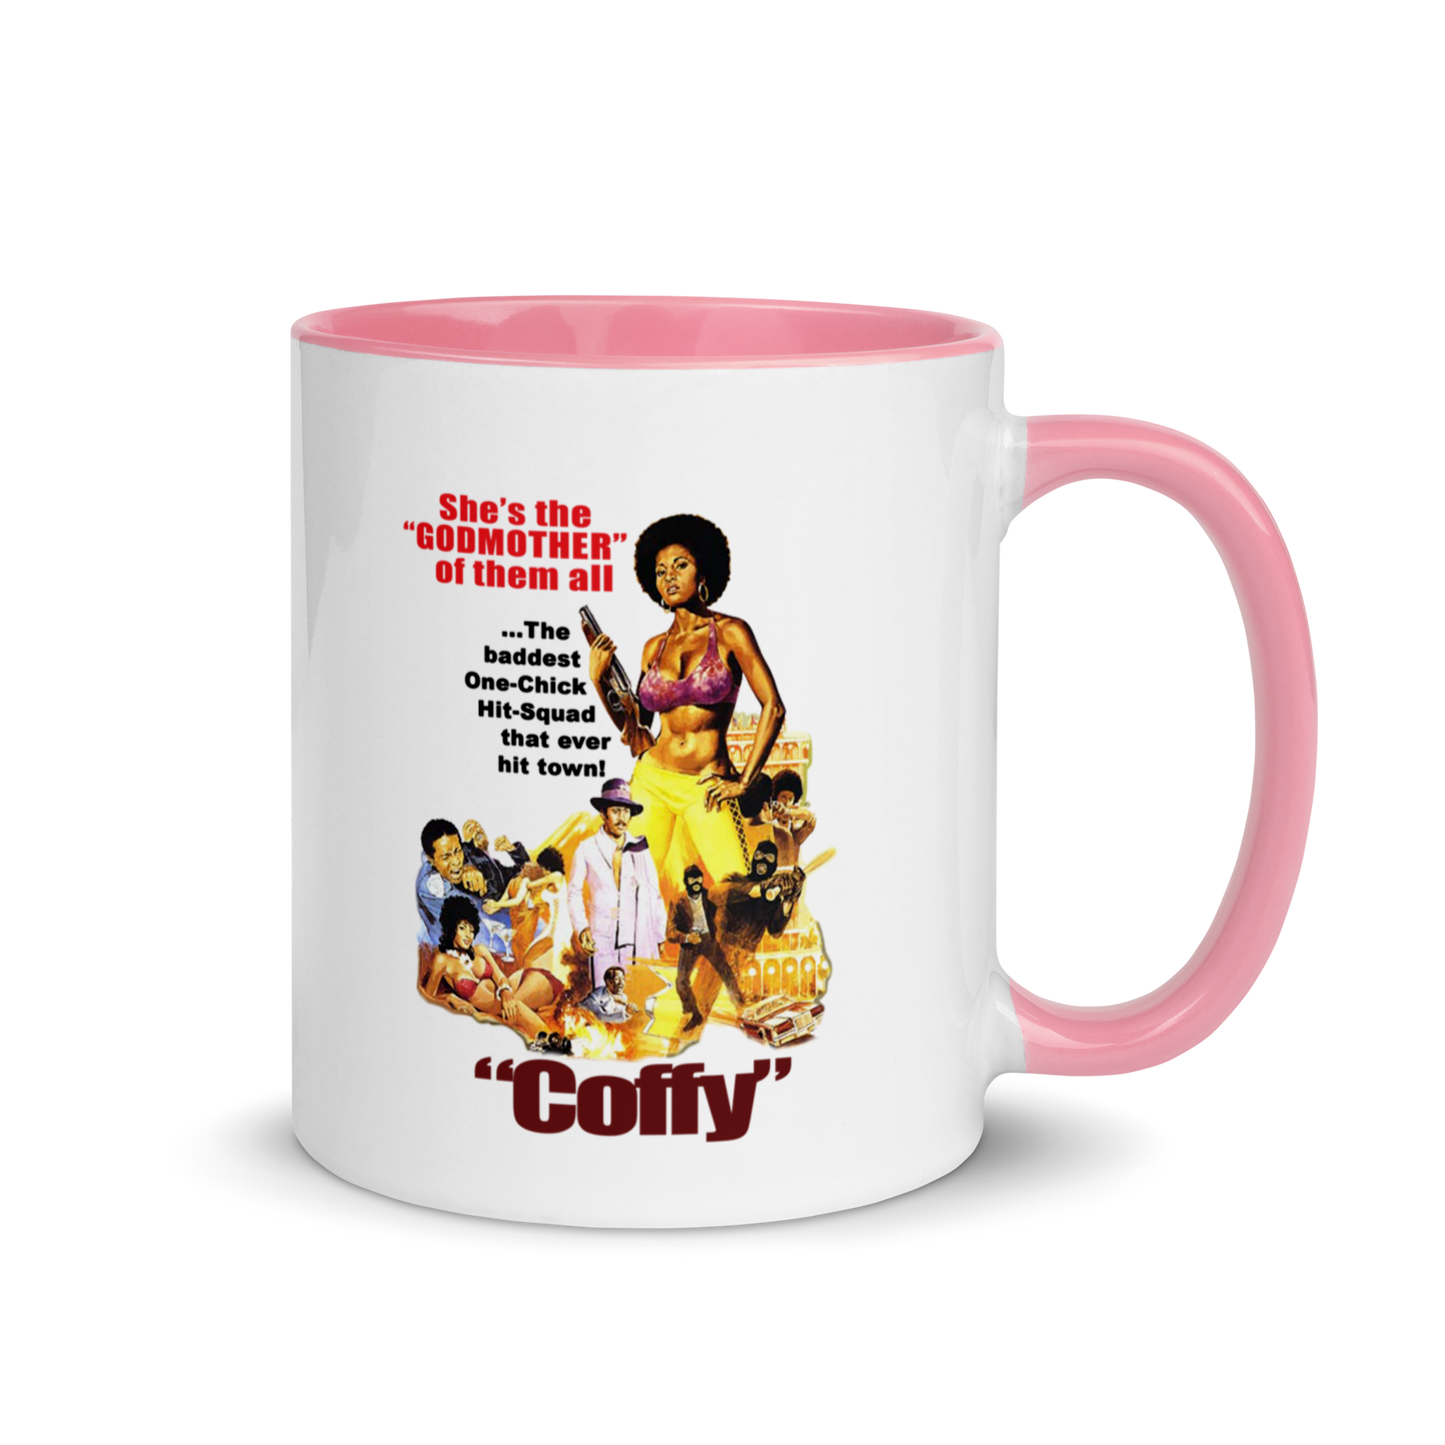 Vintage Coffy Blaxploitation Ceramic Color-Pop Mug